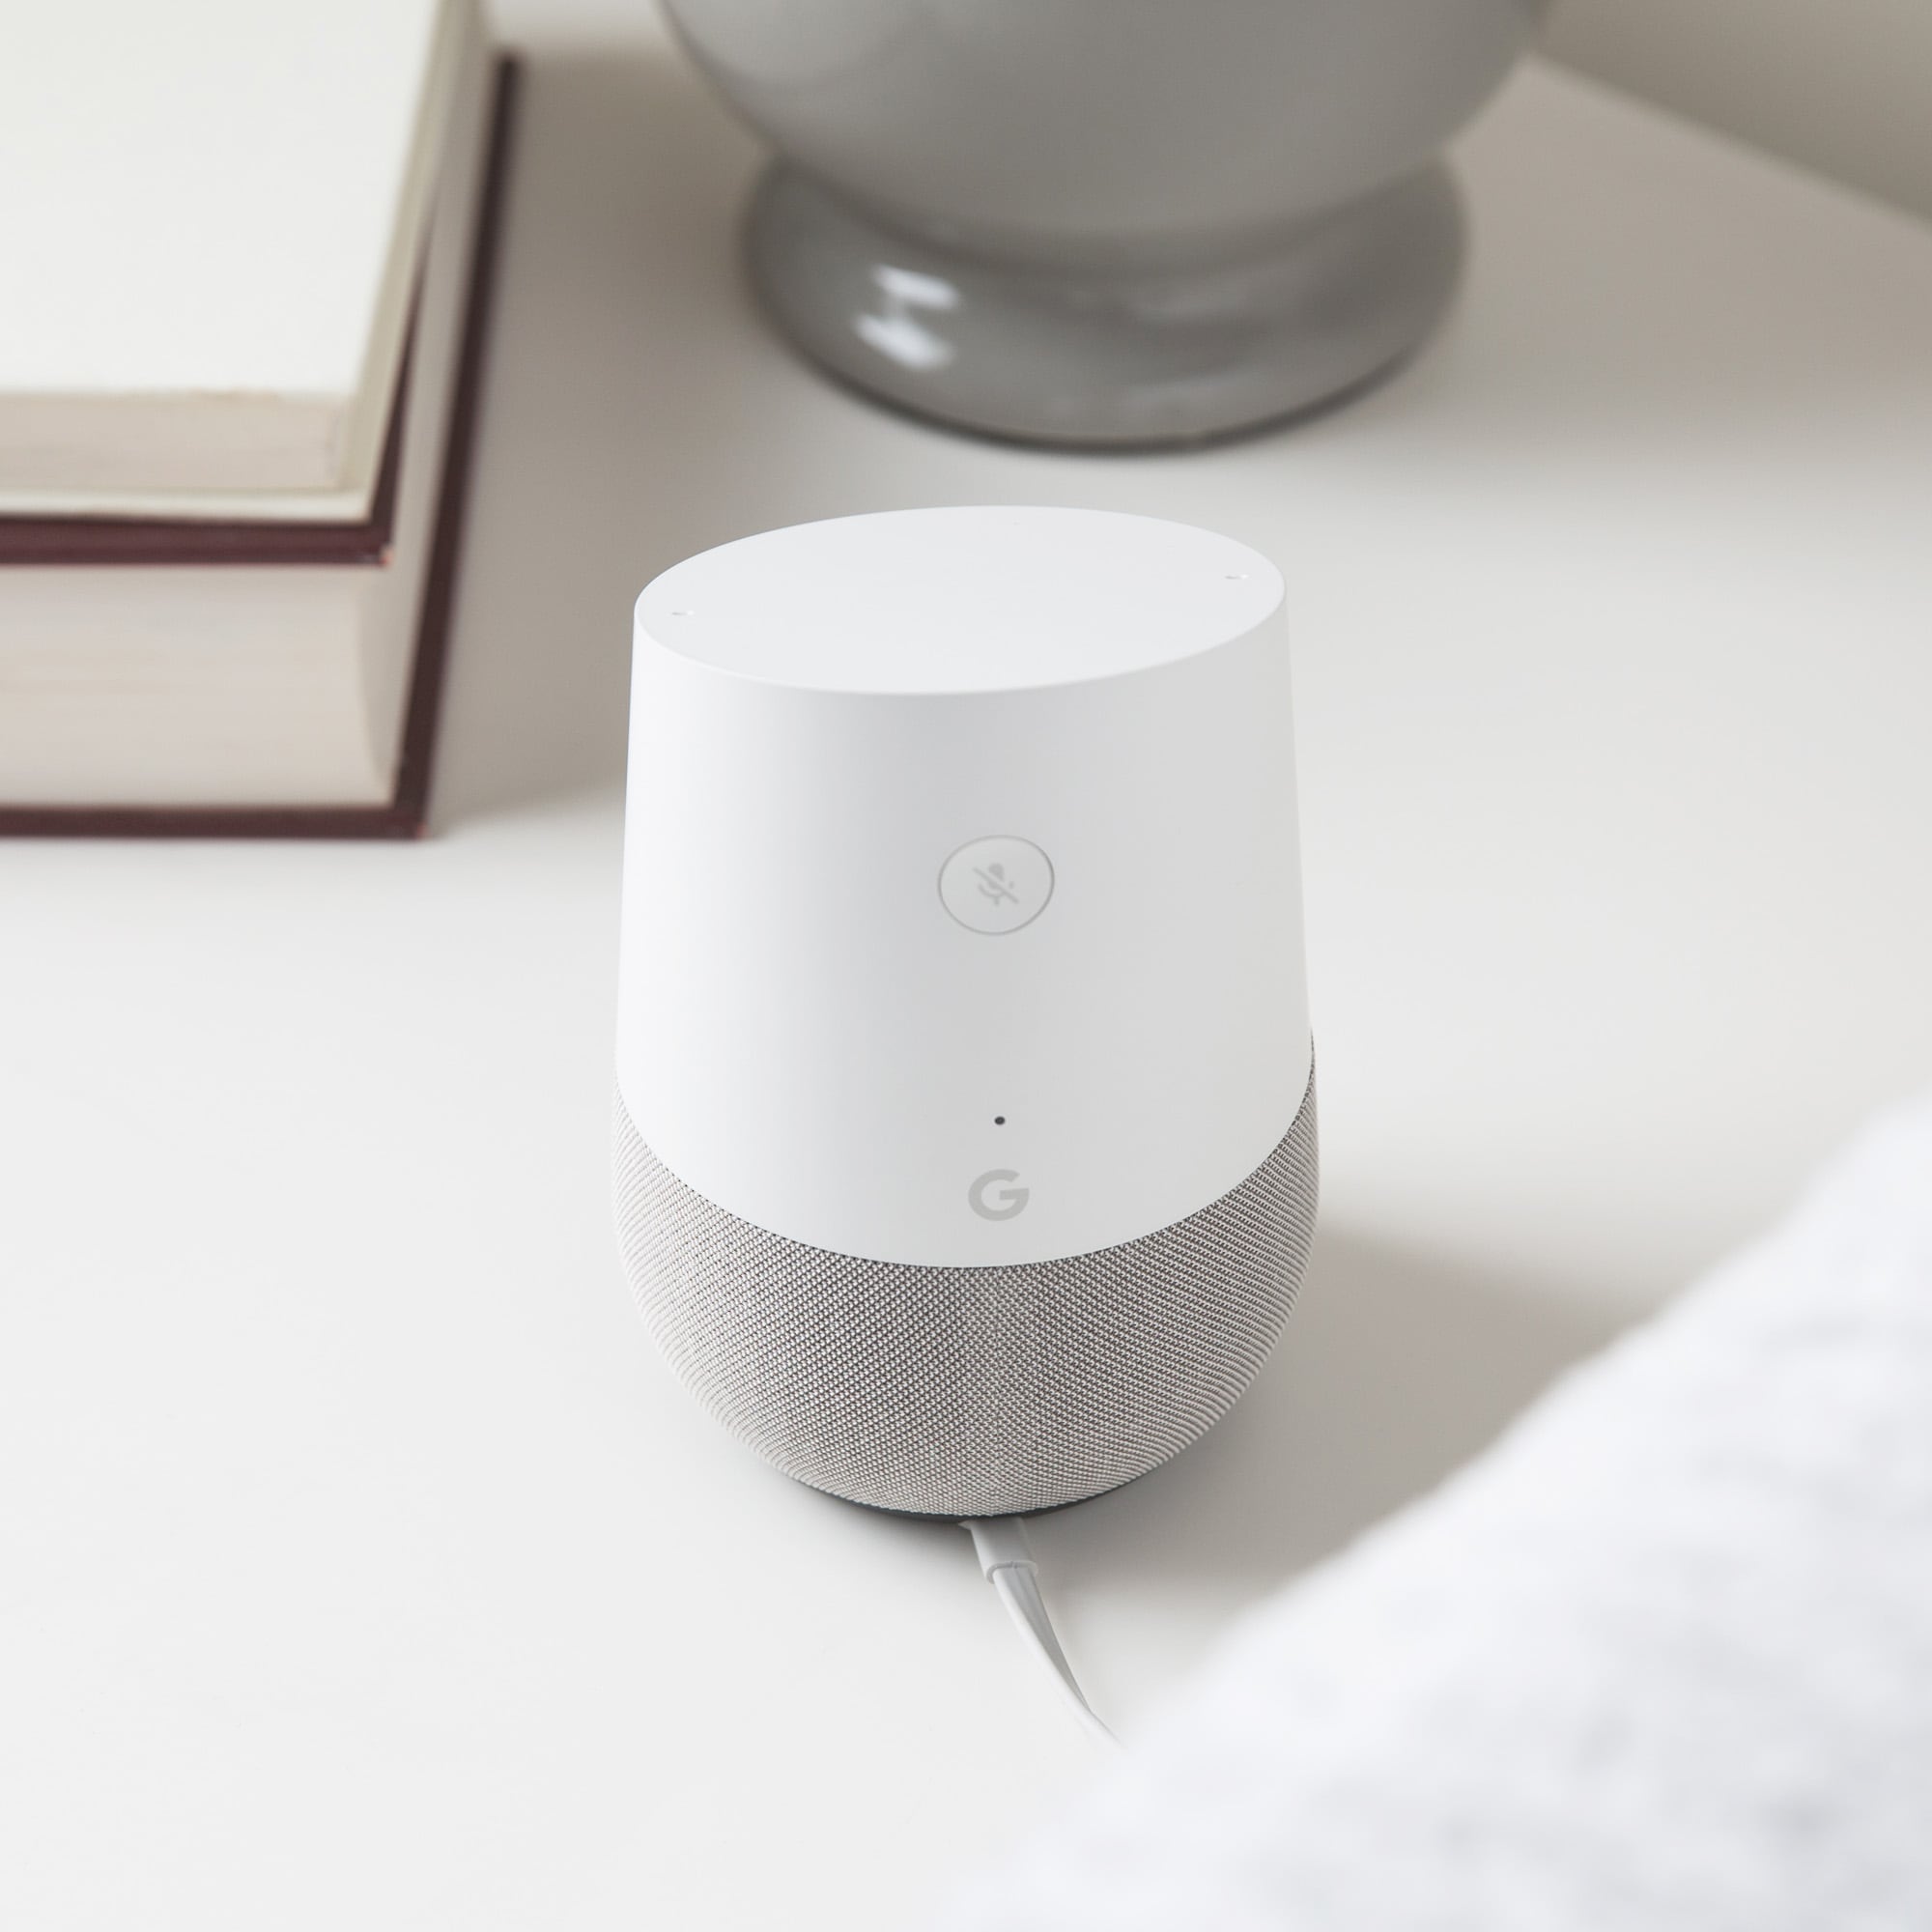 Découvrez Google Home - Smart Speaker